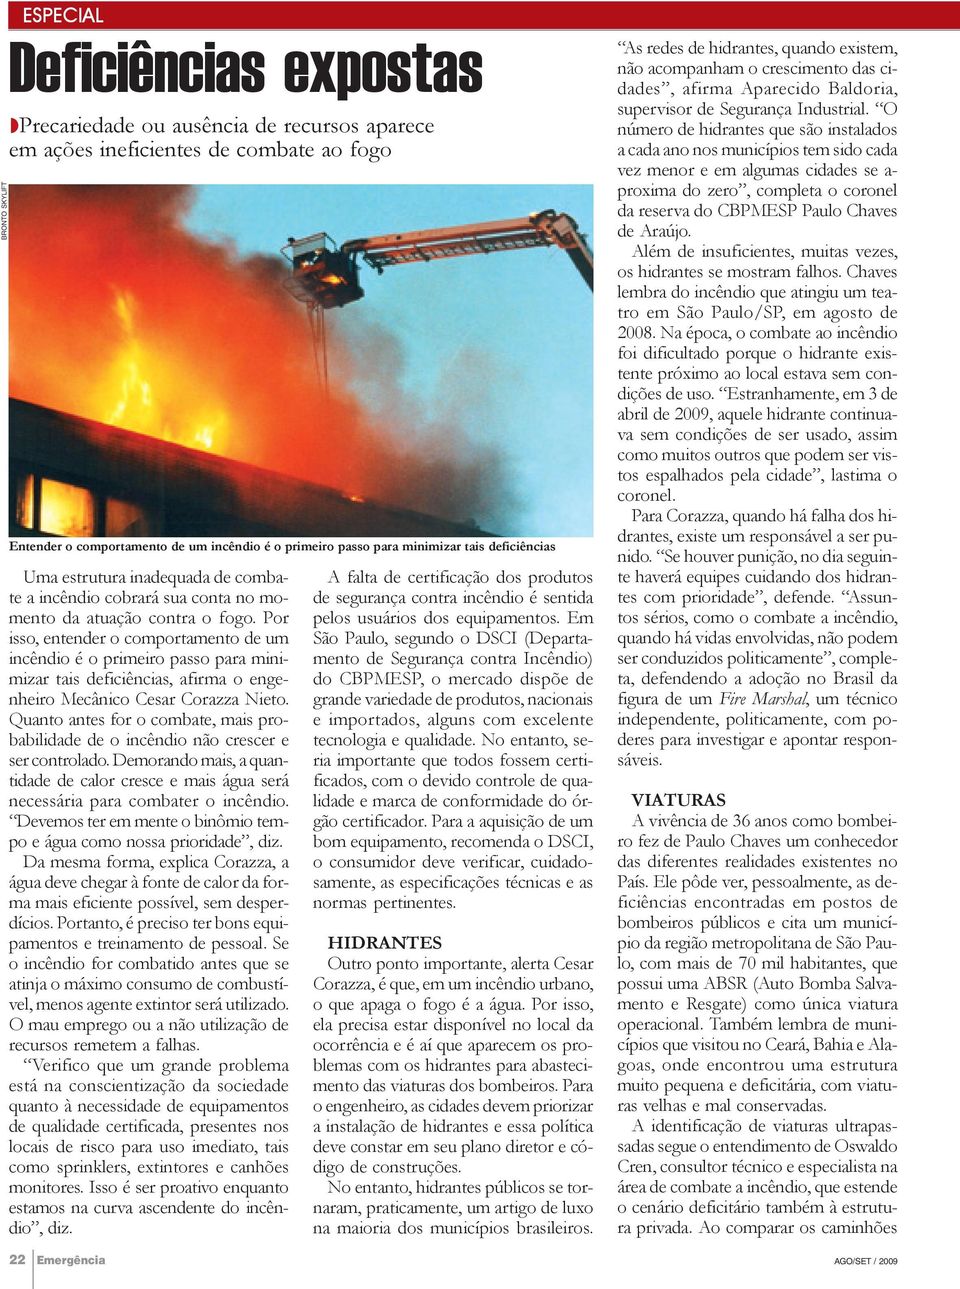 Por isso, entender o comportamento de um incêndio é o primeiro passo para minimizar tais deficiências, afirma o engenheiro Mecânico Cesar Corazza Nieto.